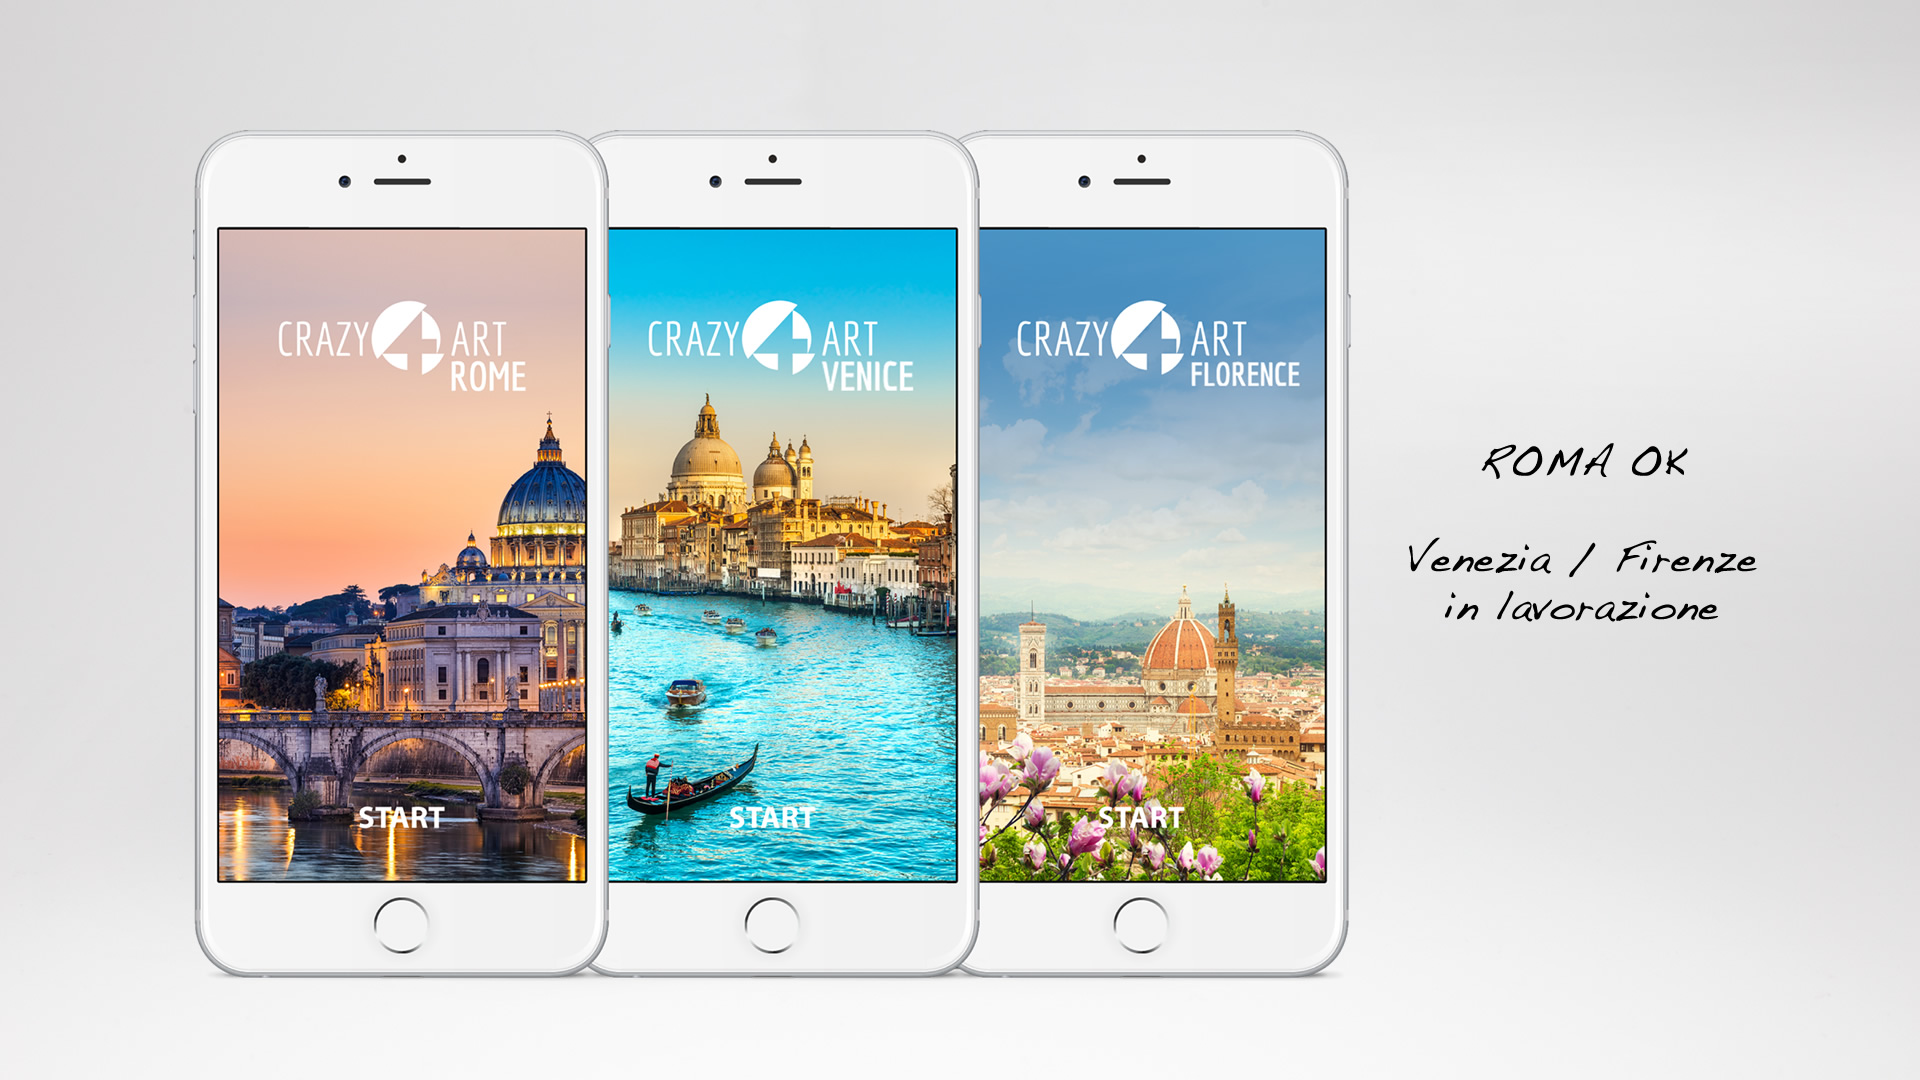 Crazy4Art App Roma audioguida - Patrizio Rossi - realizzazione immagini play store - apple app store- web graphic designer